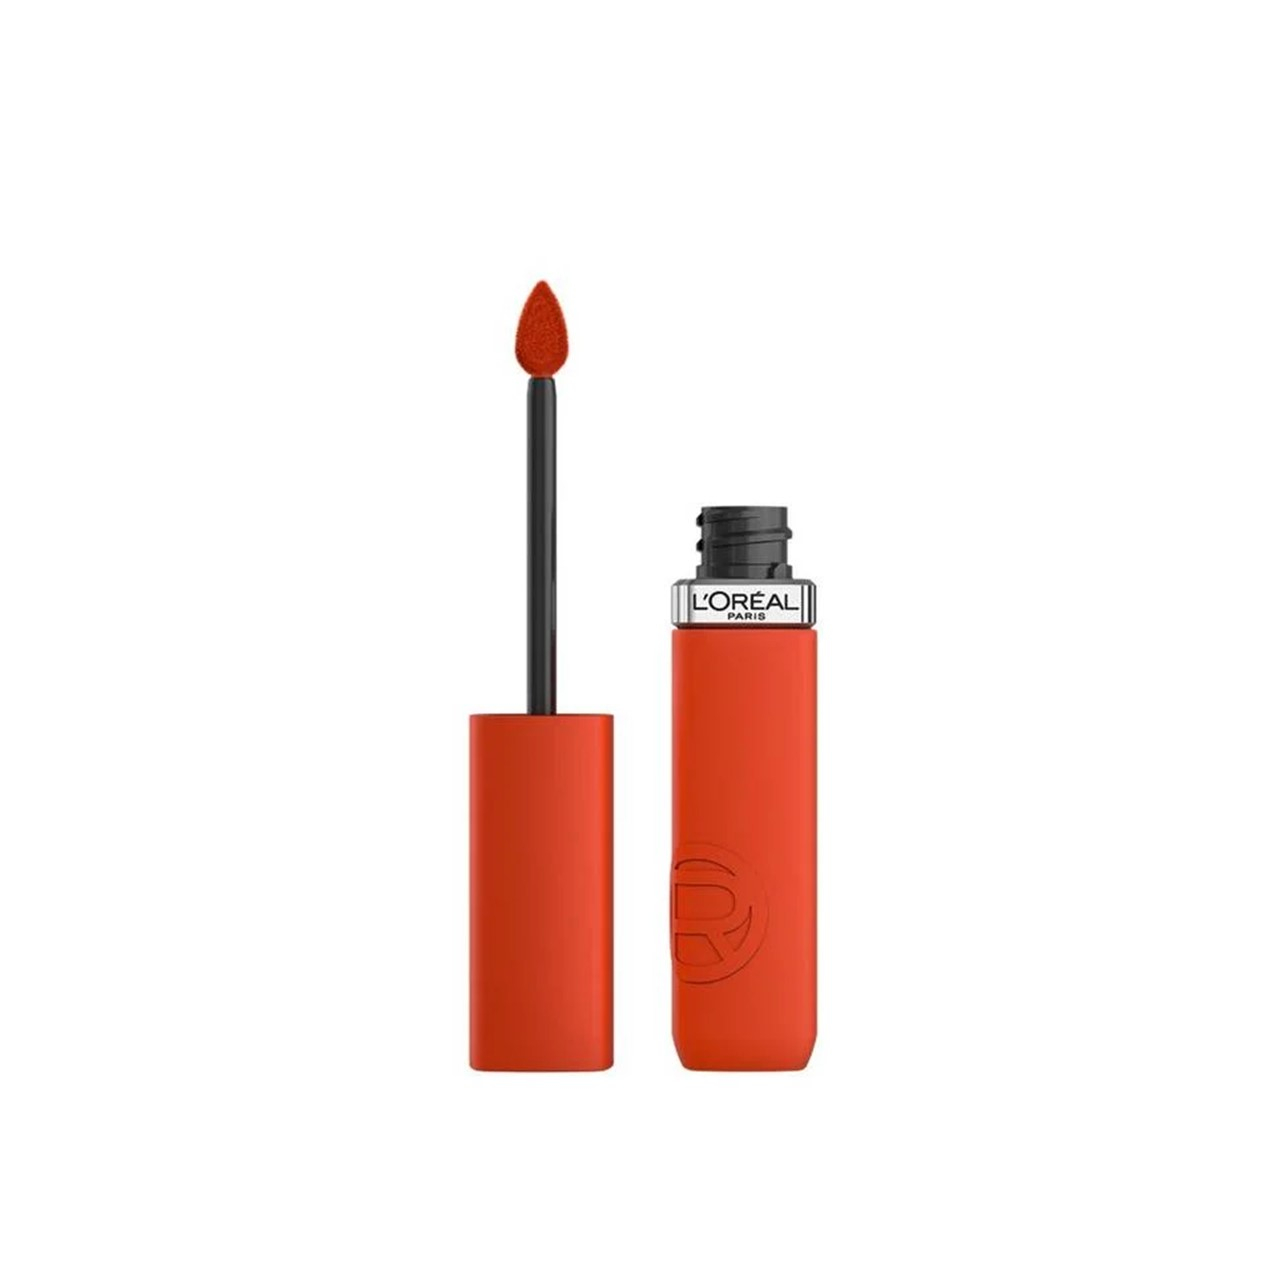 L'Oréal Paris Infallible Matte Resistance Liquid Lipstick 300 Sunbathing 5ml (0.17 fl oz)